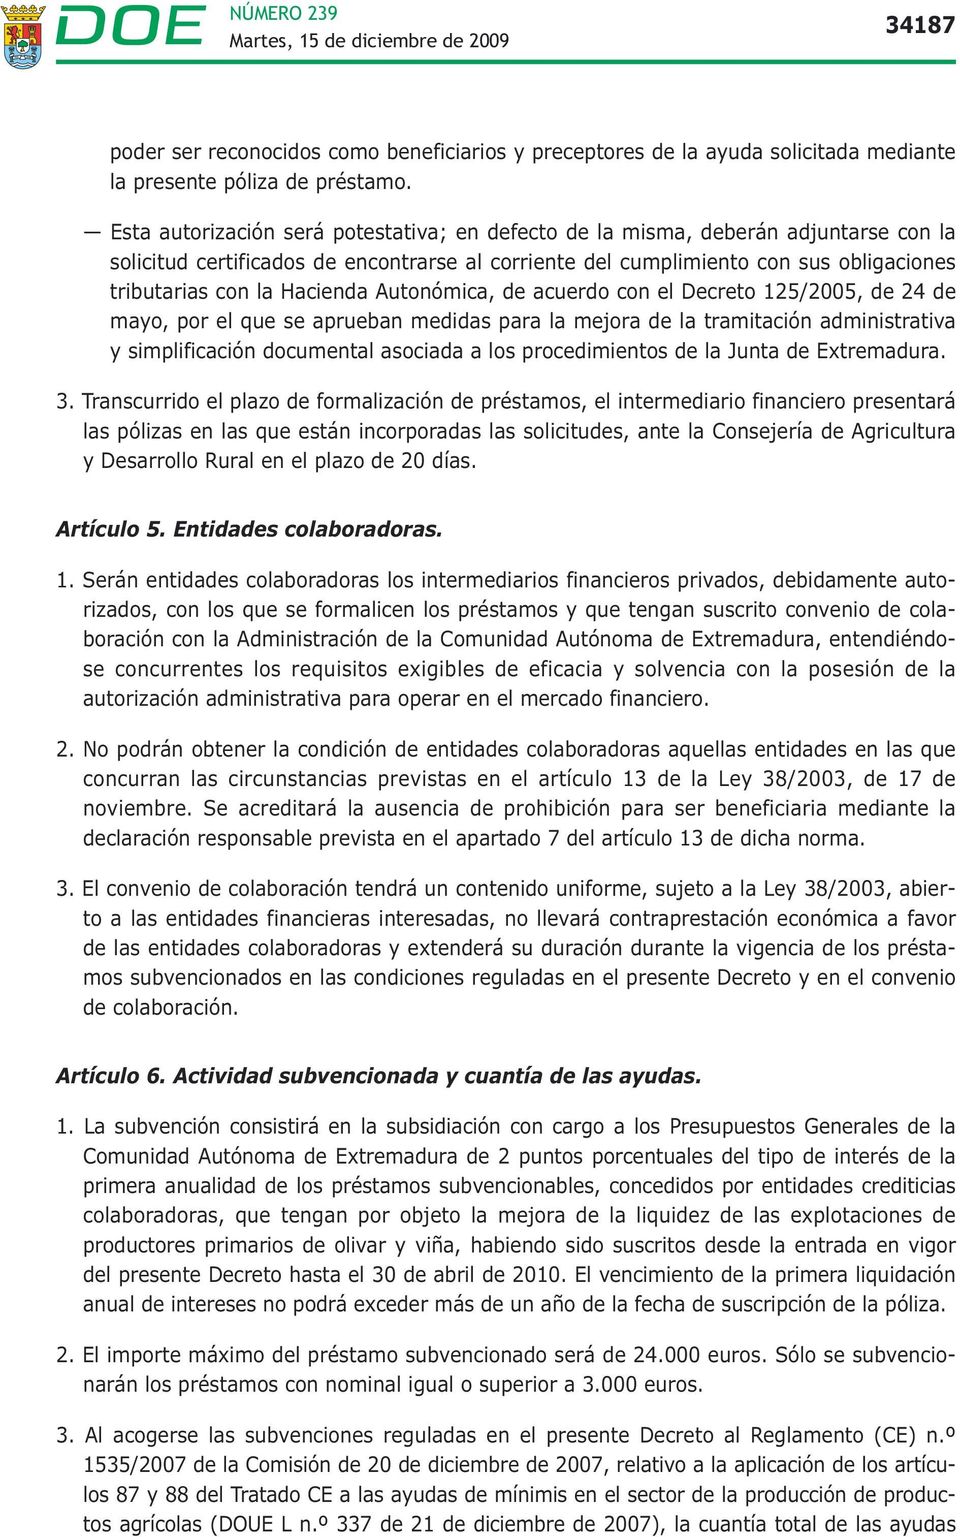 Hacienda Autonómica, de acuerdo con el Decreto 125/2005, de 24 de mayo, por el que se aprueban medidas para la mejora de la tramitación administrativa y simplificación documental asociada a los